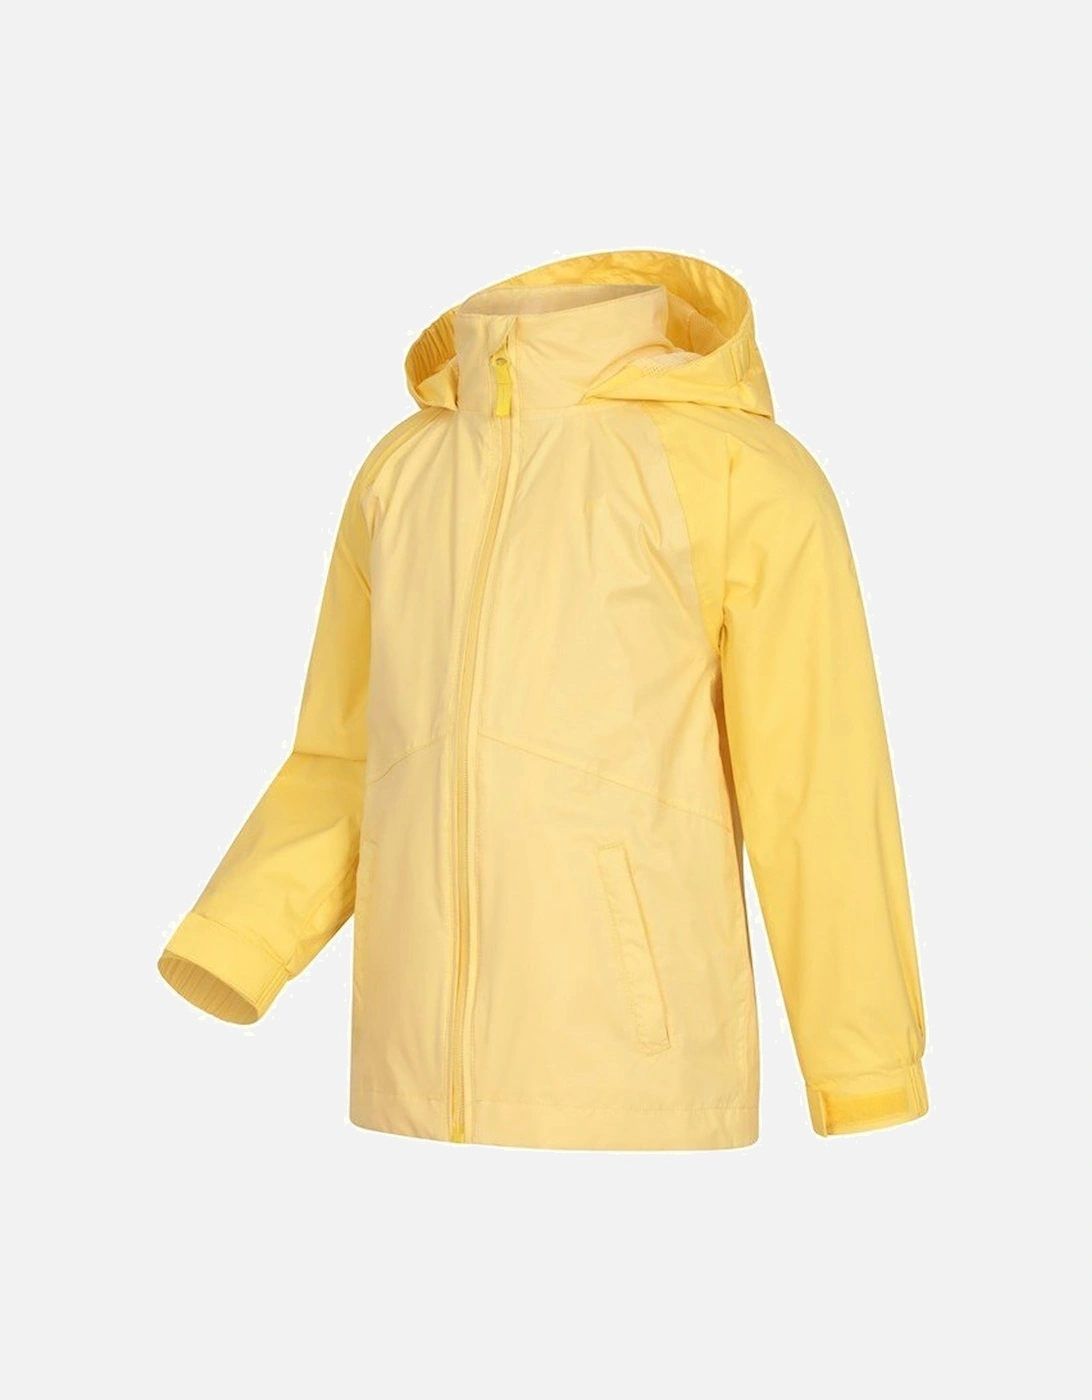 Childrens/Kids Torrent II Waterproof Jacket